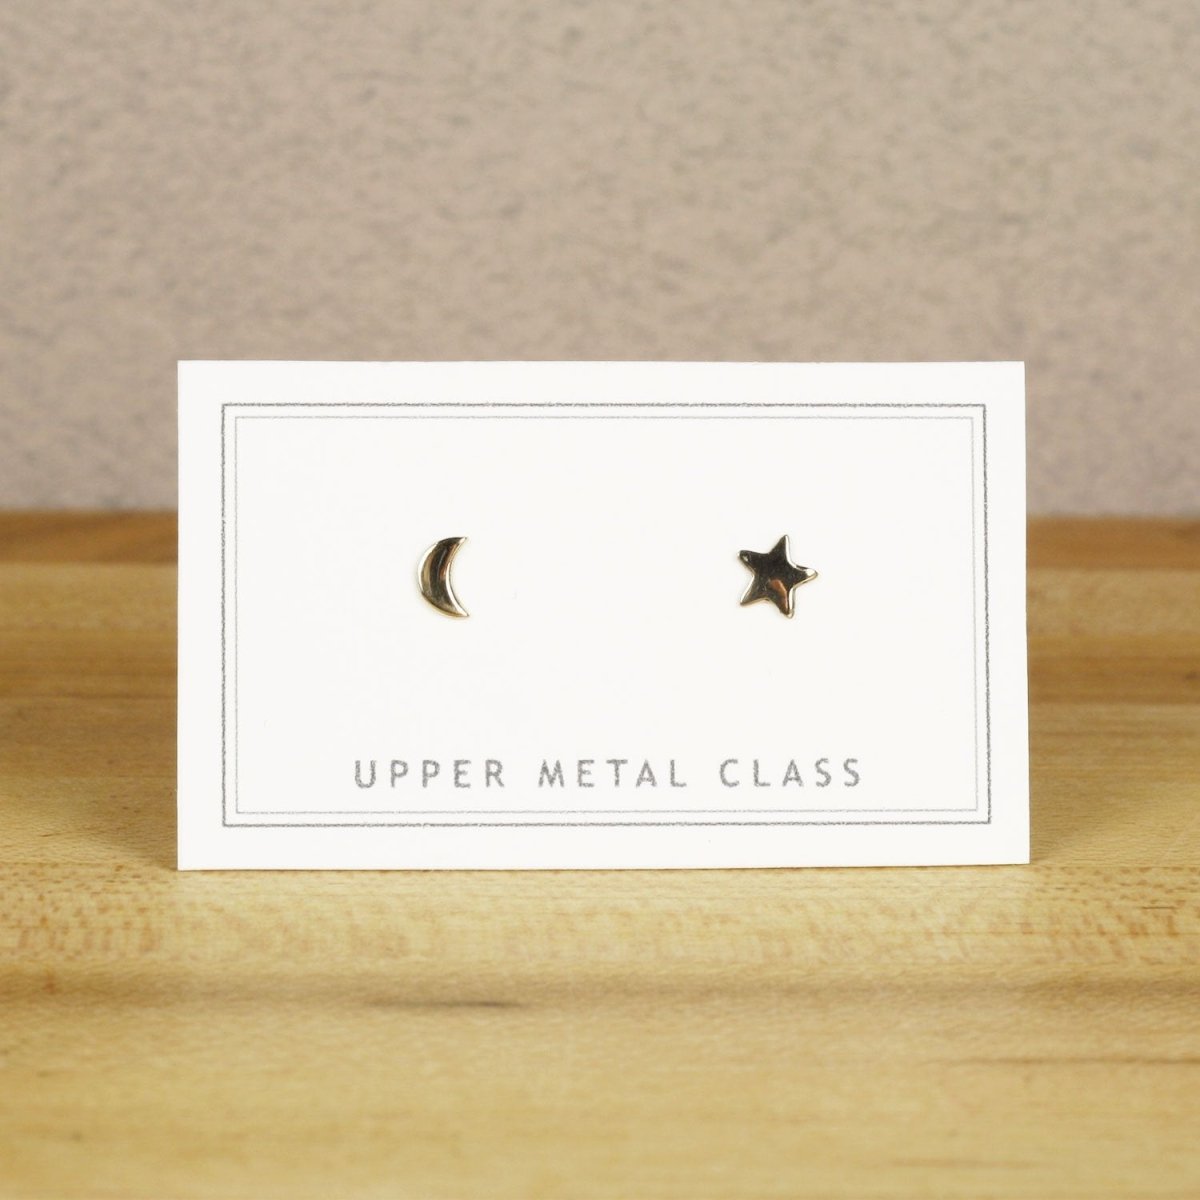 Upper Metal Class Bronze Moon Star Stud Earrings